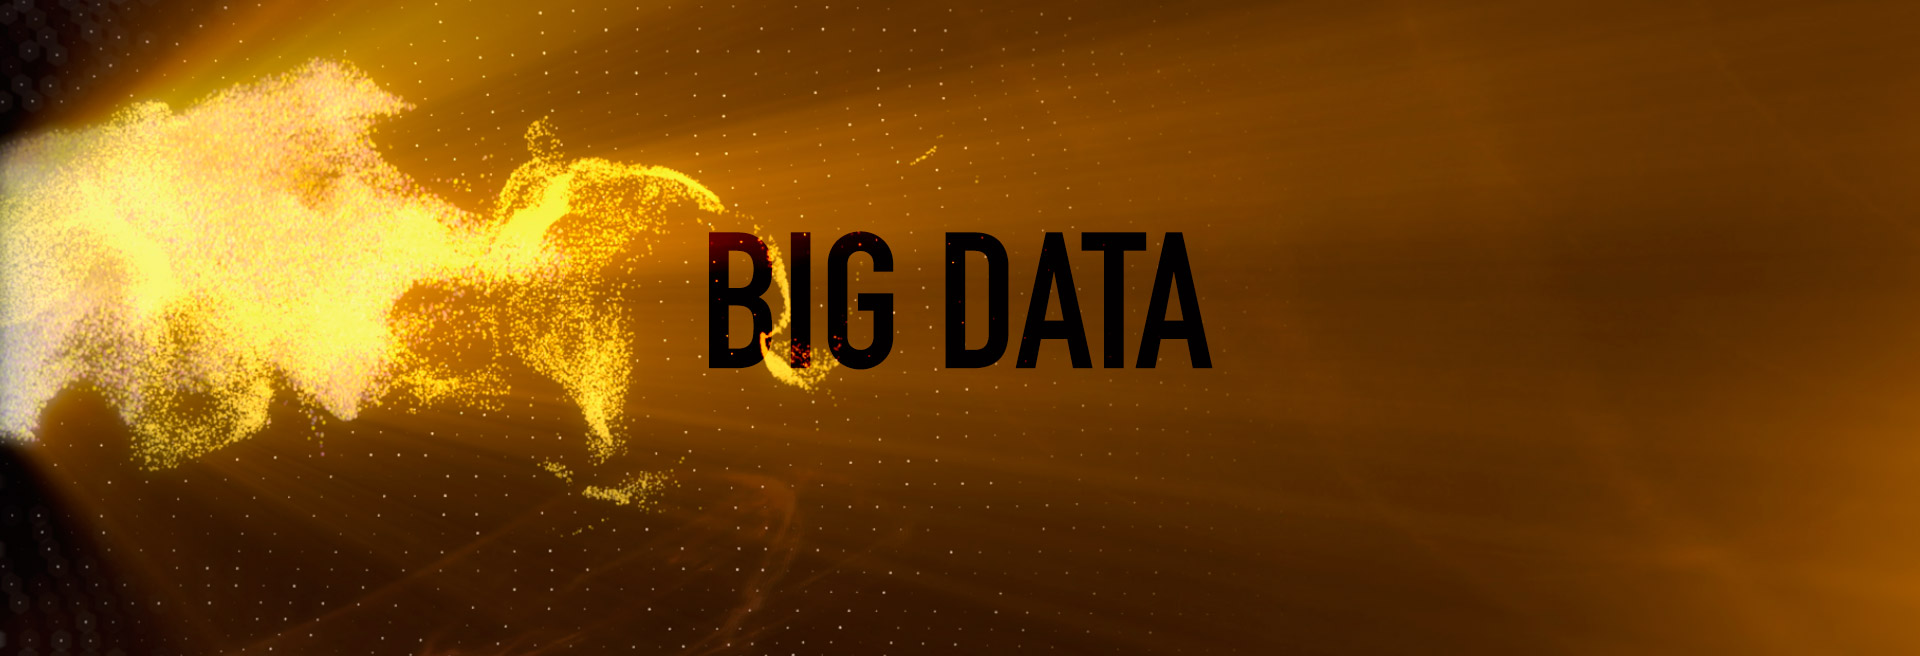 Big-Data-Title3